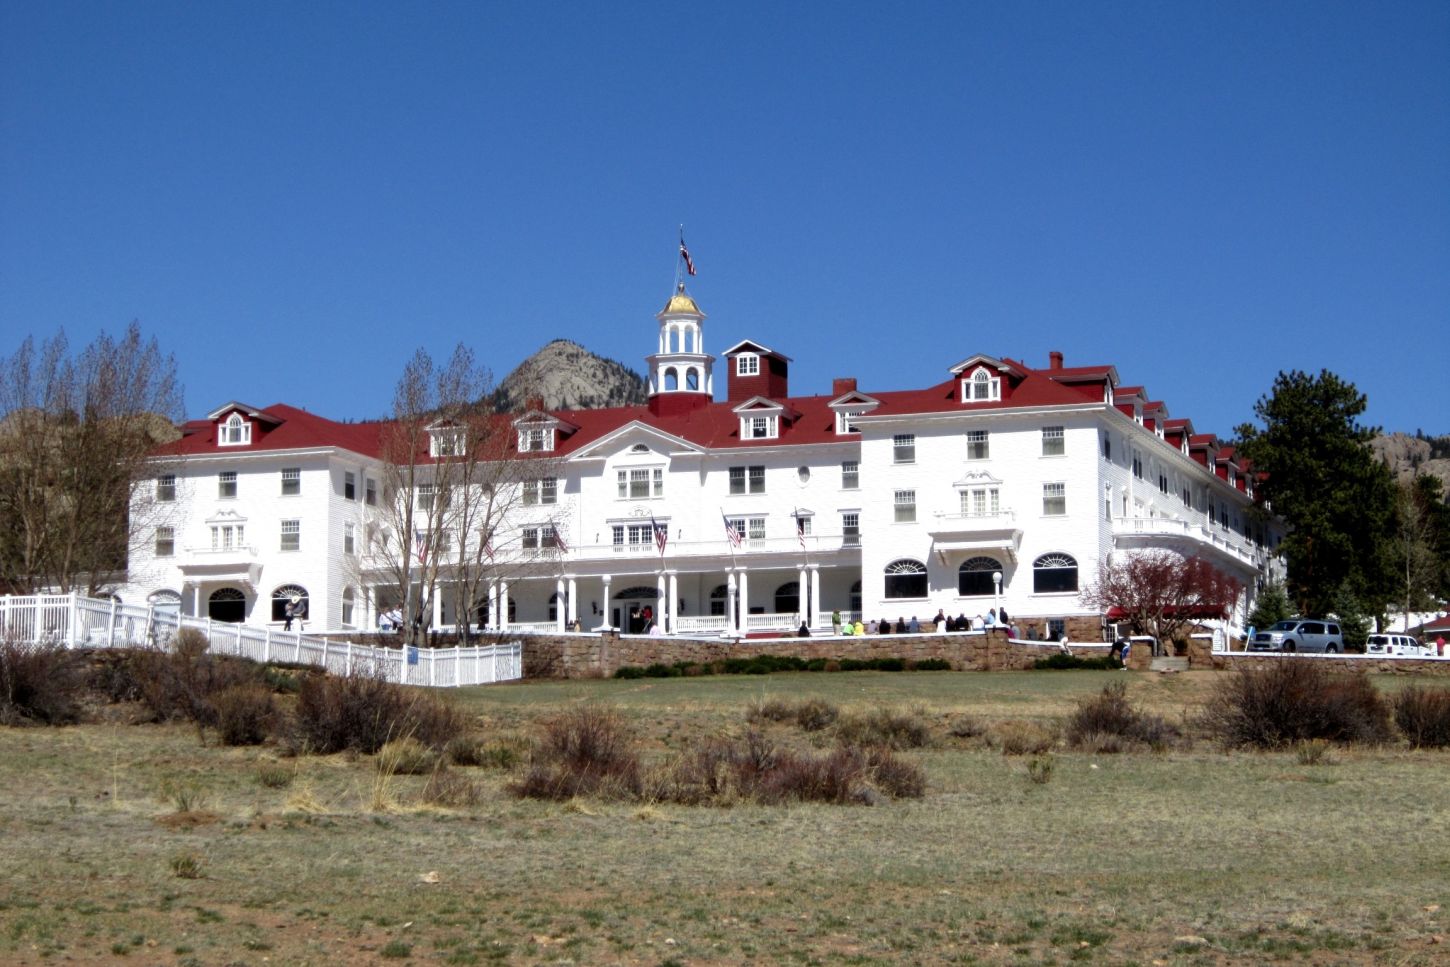 Das Stanley Hotel in Colorado, welches Stephen King als Inspiration für das Hotel im Buch diente